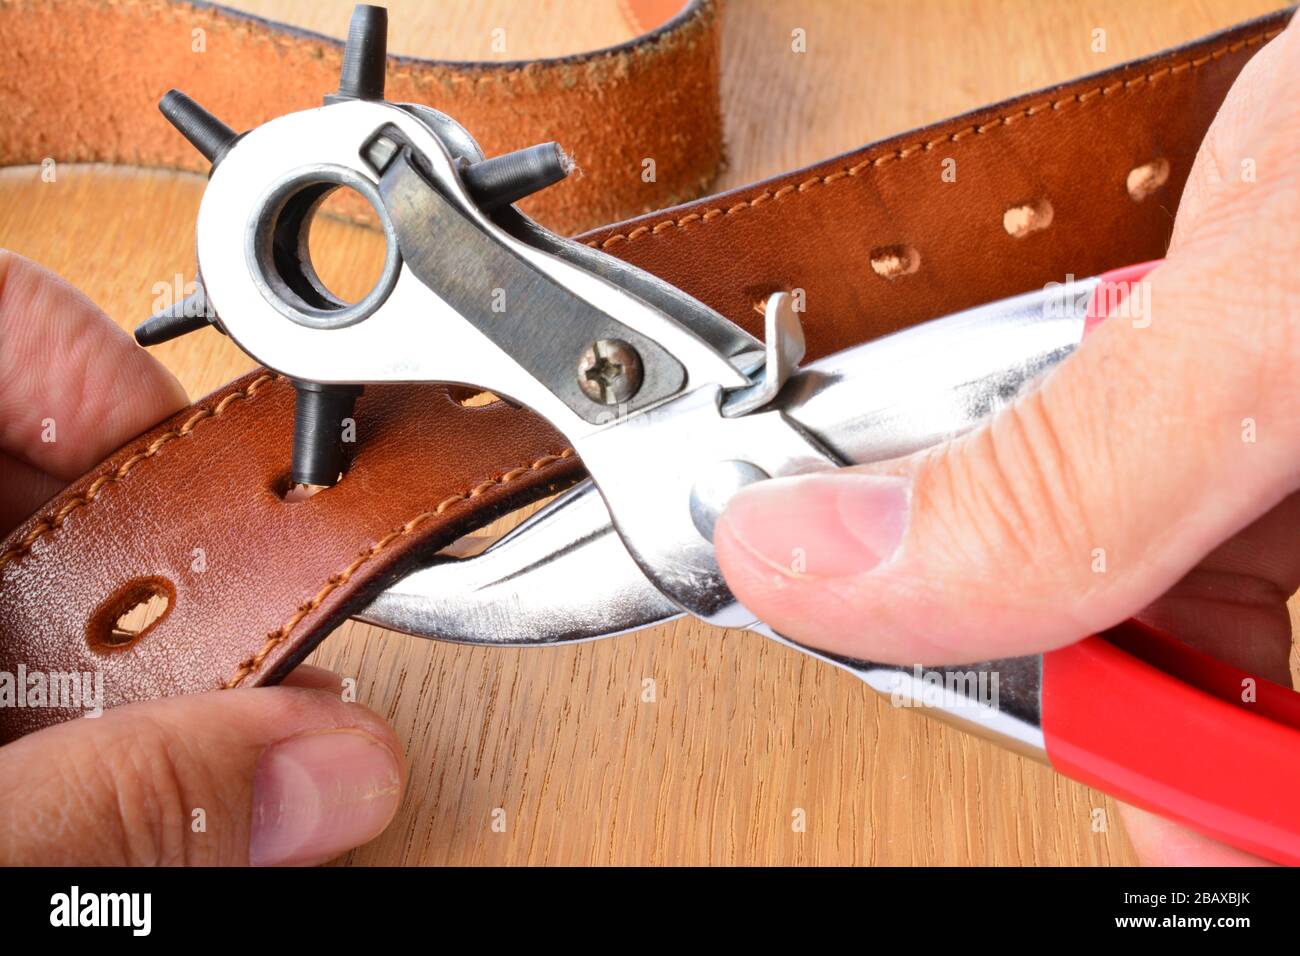 Perforation de ceinture en cuir, outil de perforation et nouvelle ceinture en cuir dans les mains de l'artisan sur fond en bois Banque D'Images